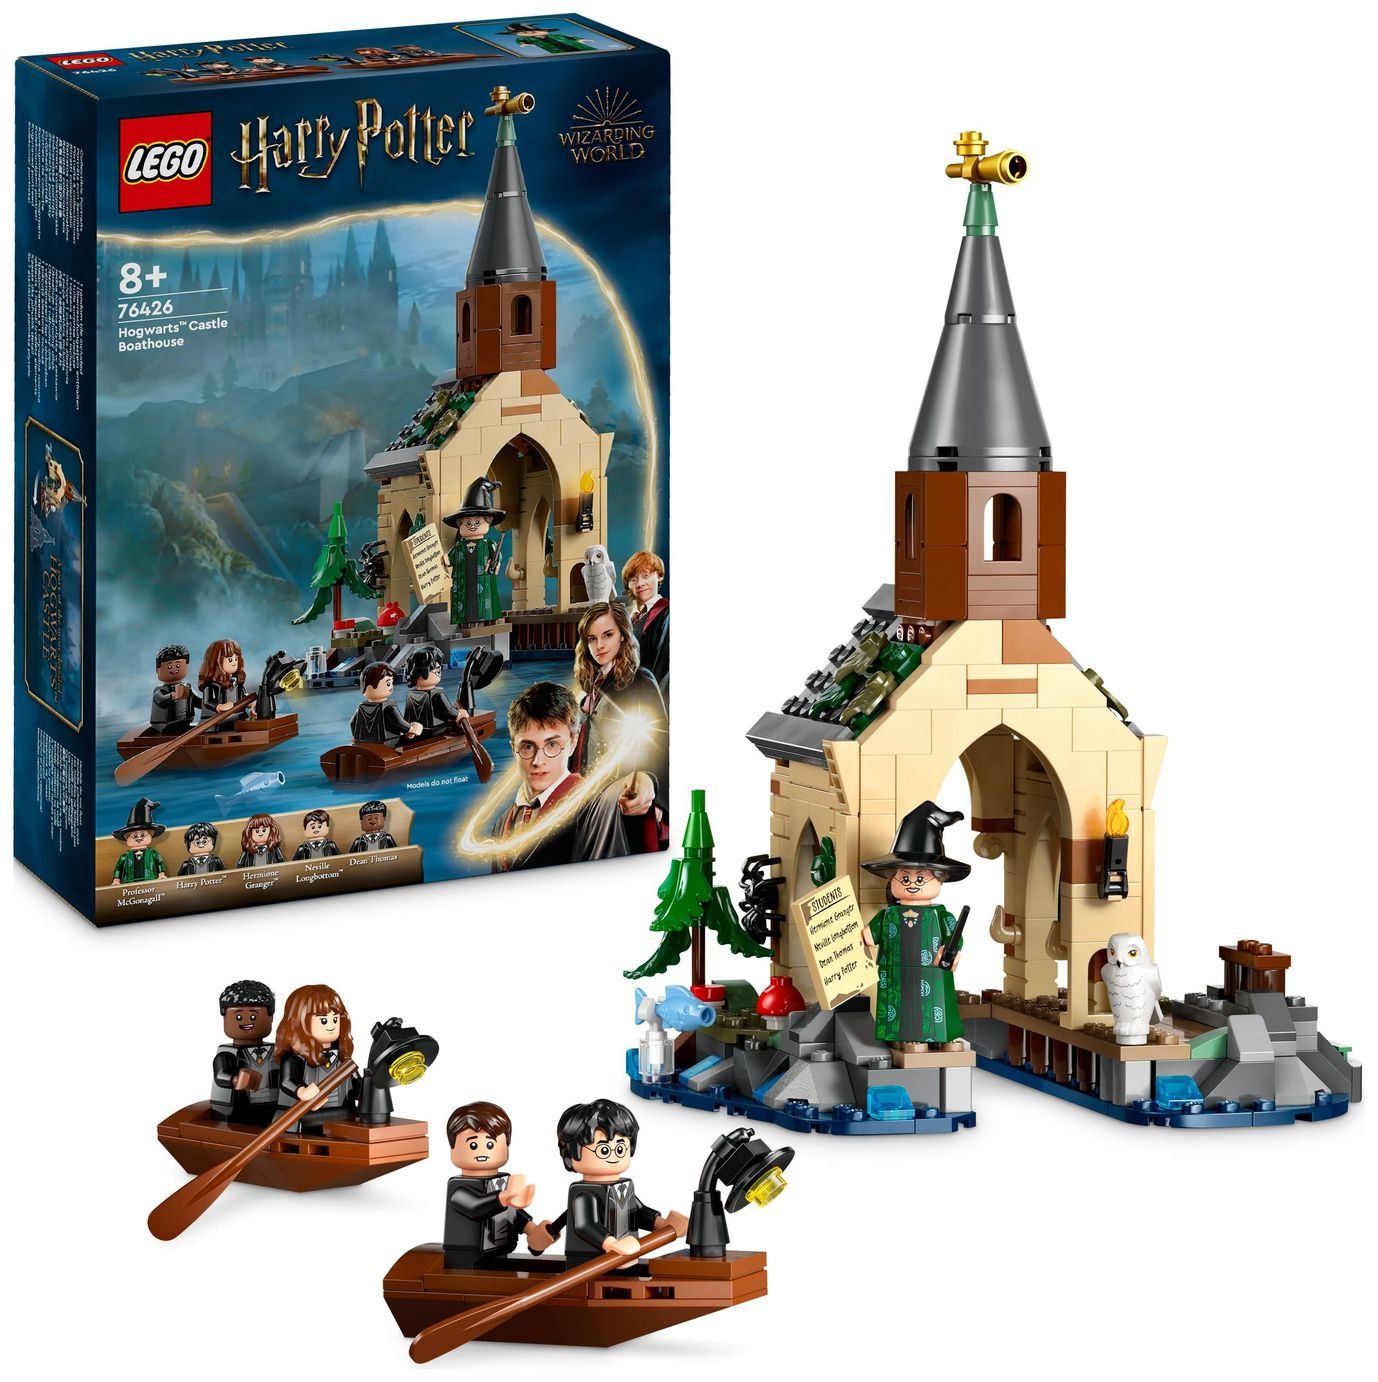 LEGO Harry Potter Hogwarts Castle Boathouse Toy Set 76426